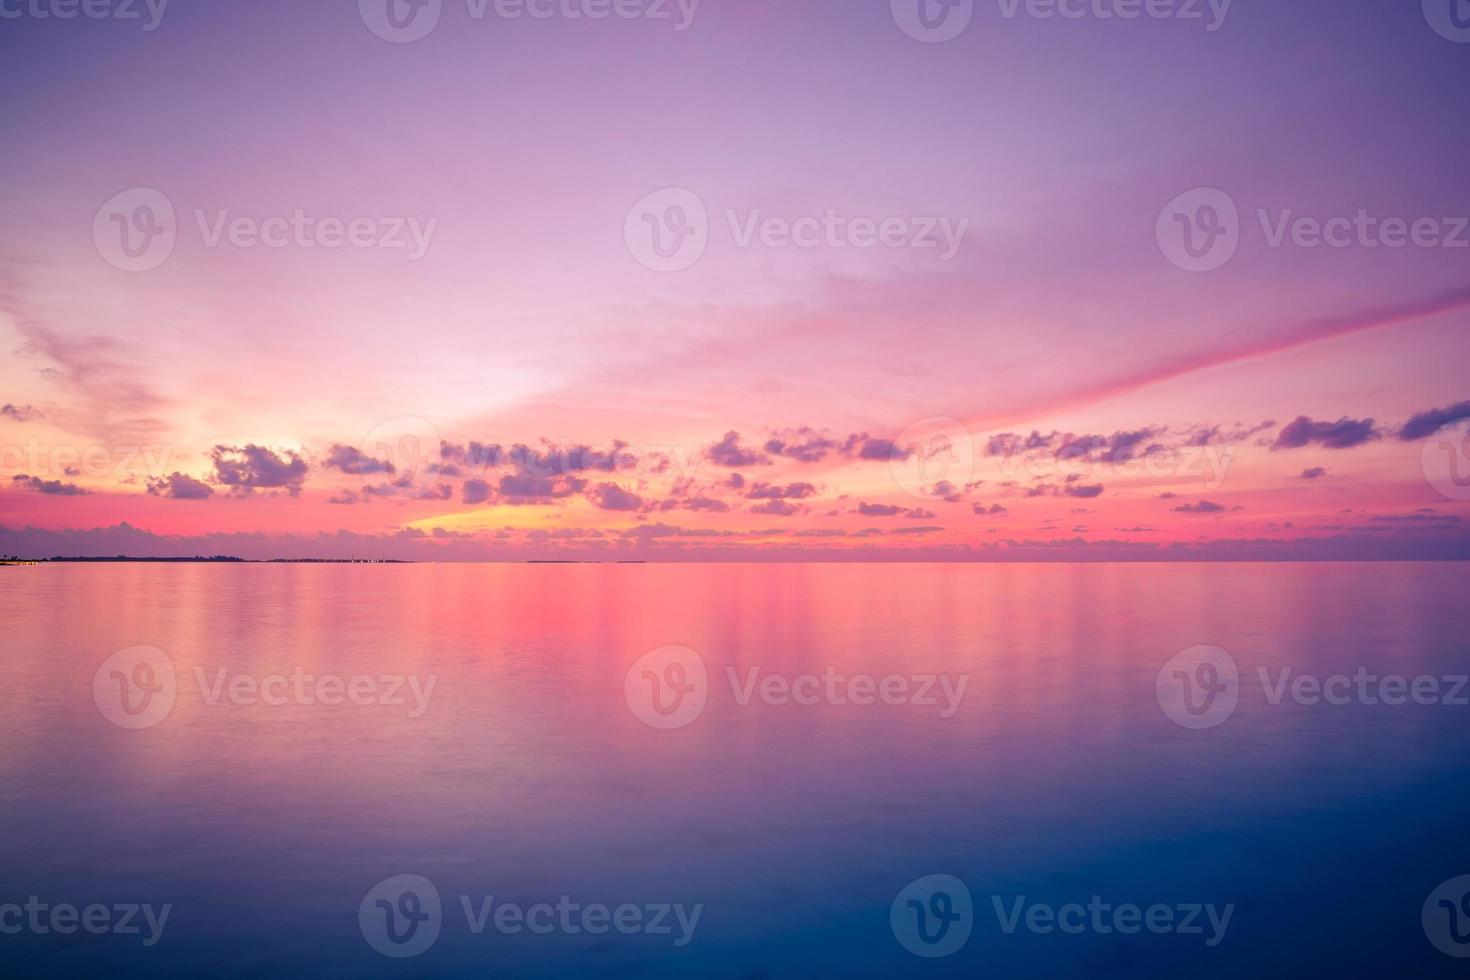 magnifik se av hav solnedgång, ljus horisont. inspirera skön strand och hav se, reflexion. färgrik kväll marinmålning - skys. zen natur begrepp, stillhet, avslappning foto